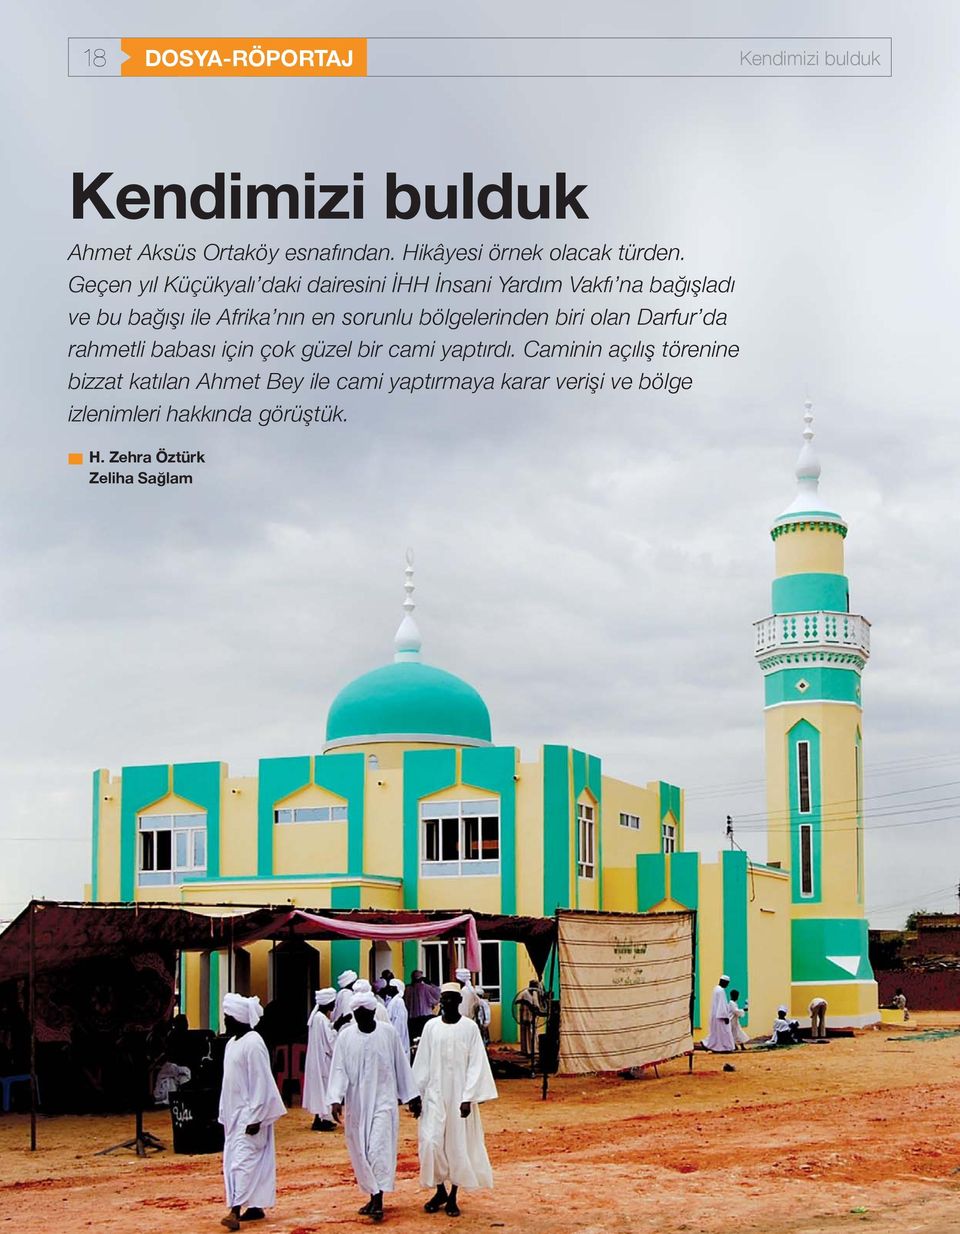 bölgelerinden biri olan Darfur da rahmetli babası için çok güzel bir cami yaptırdı.